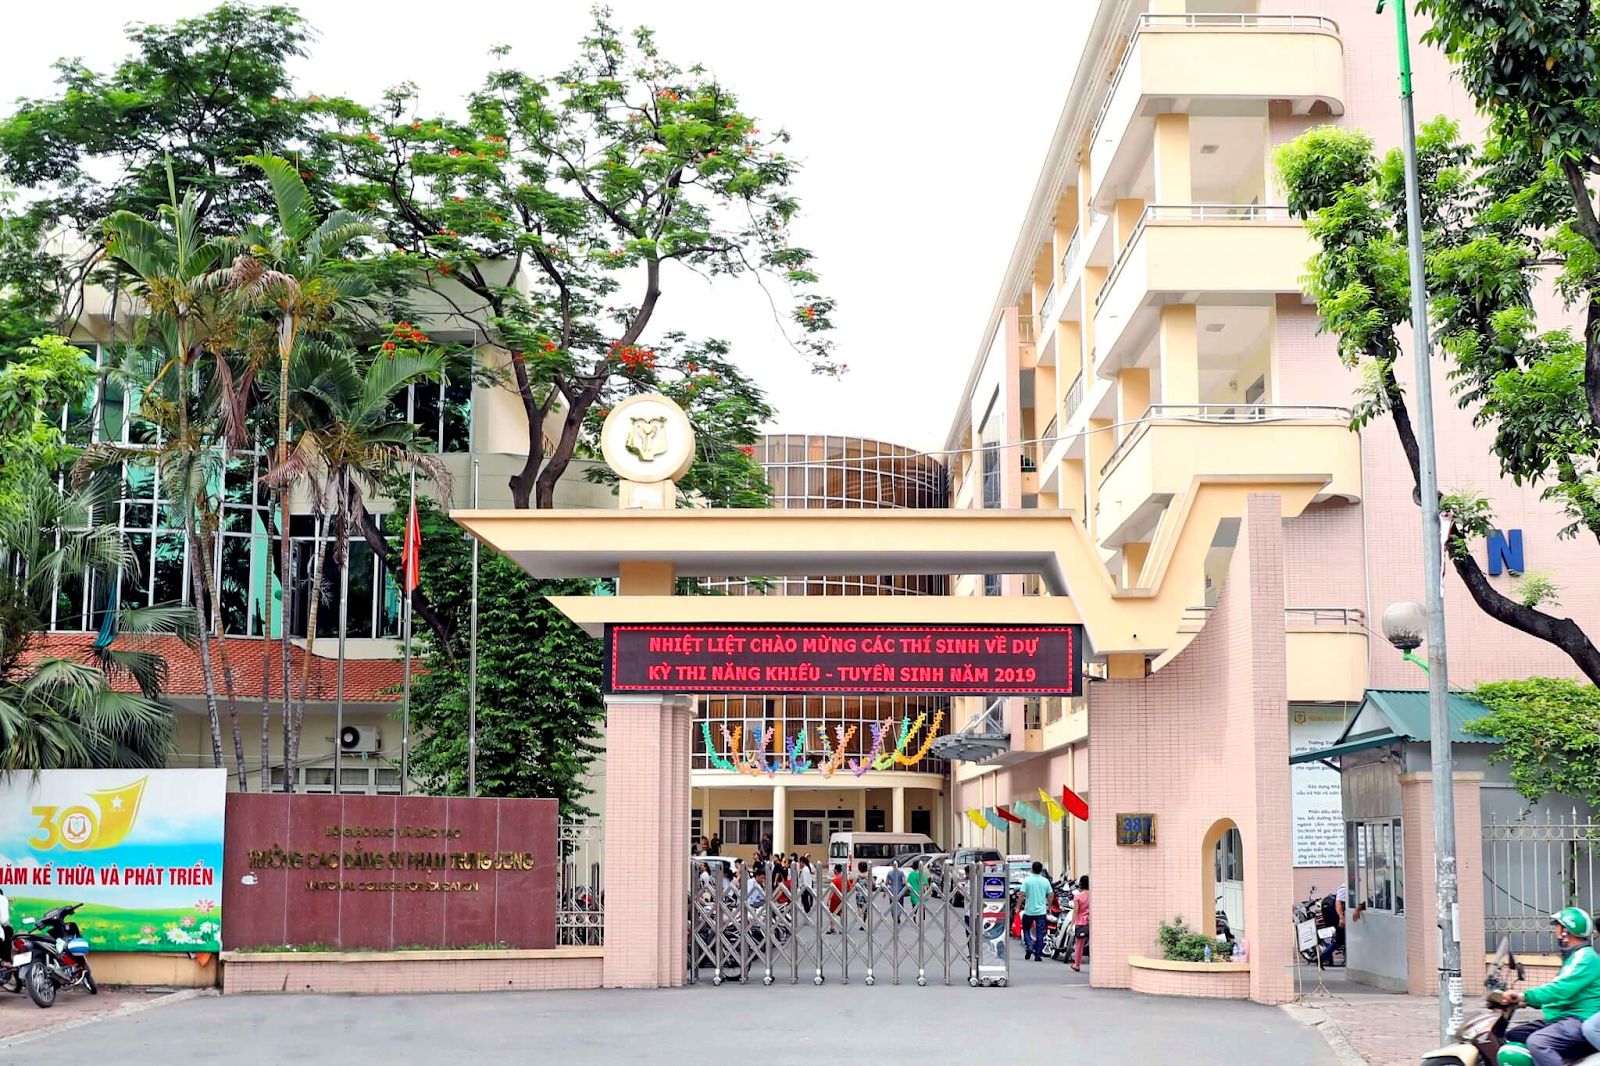 Cập nhật mới nhất giá thuê căn hộ 1PN gần Cao đẳng Sư phạm Trung Ương Thành phố Hồ Chí Minh, quận 10